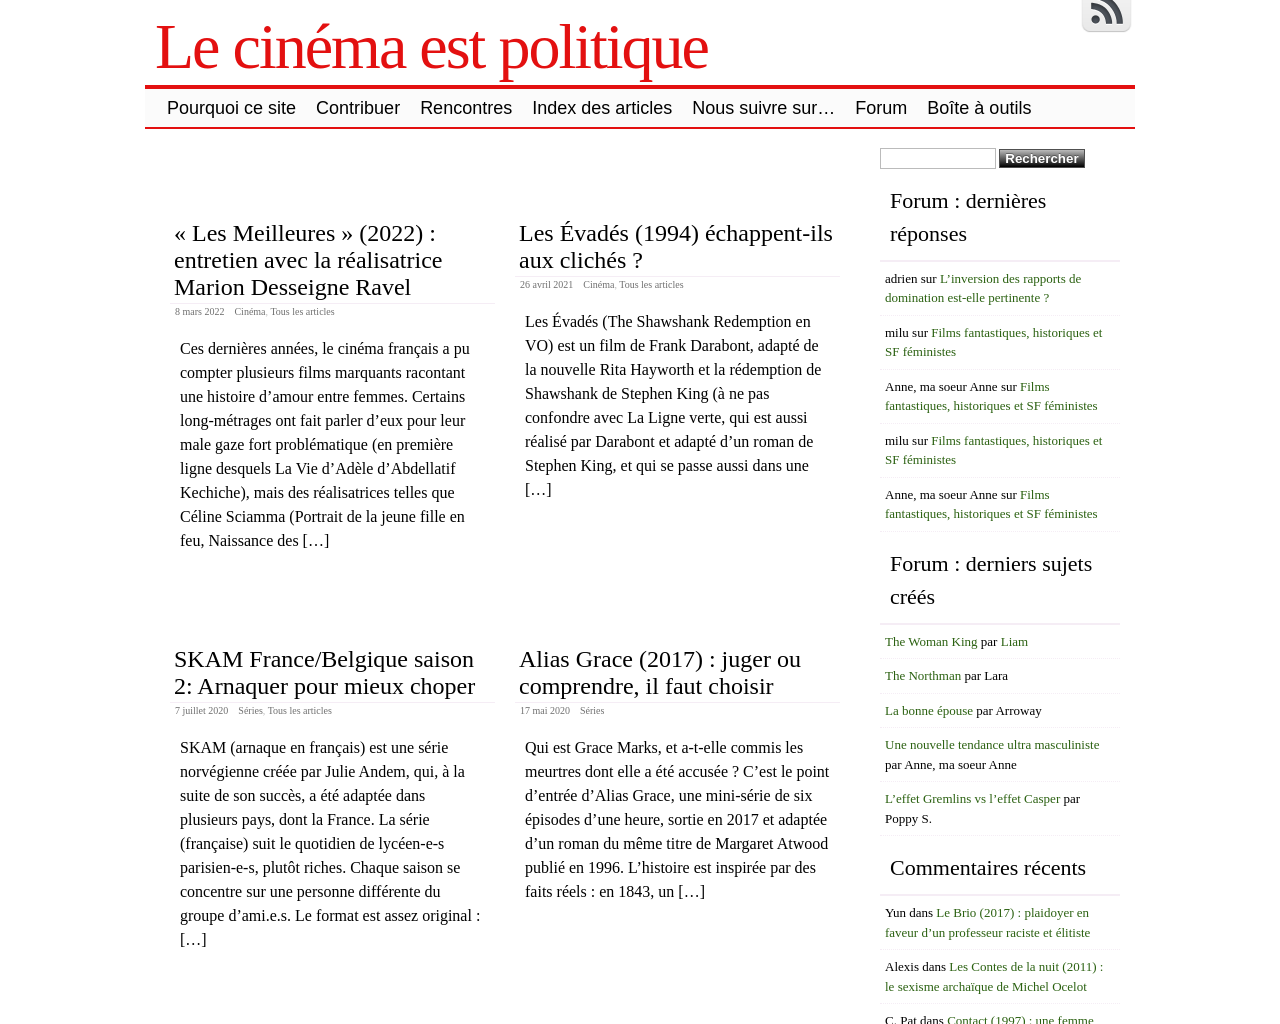 lecinemaestpolitique.fr